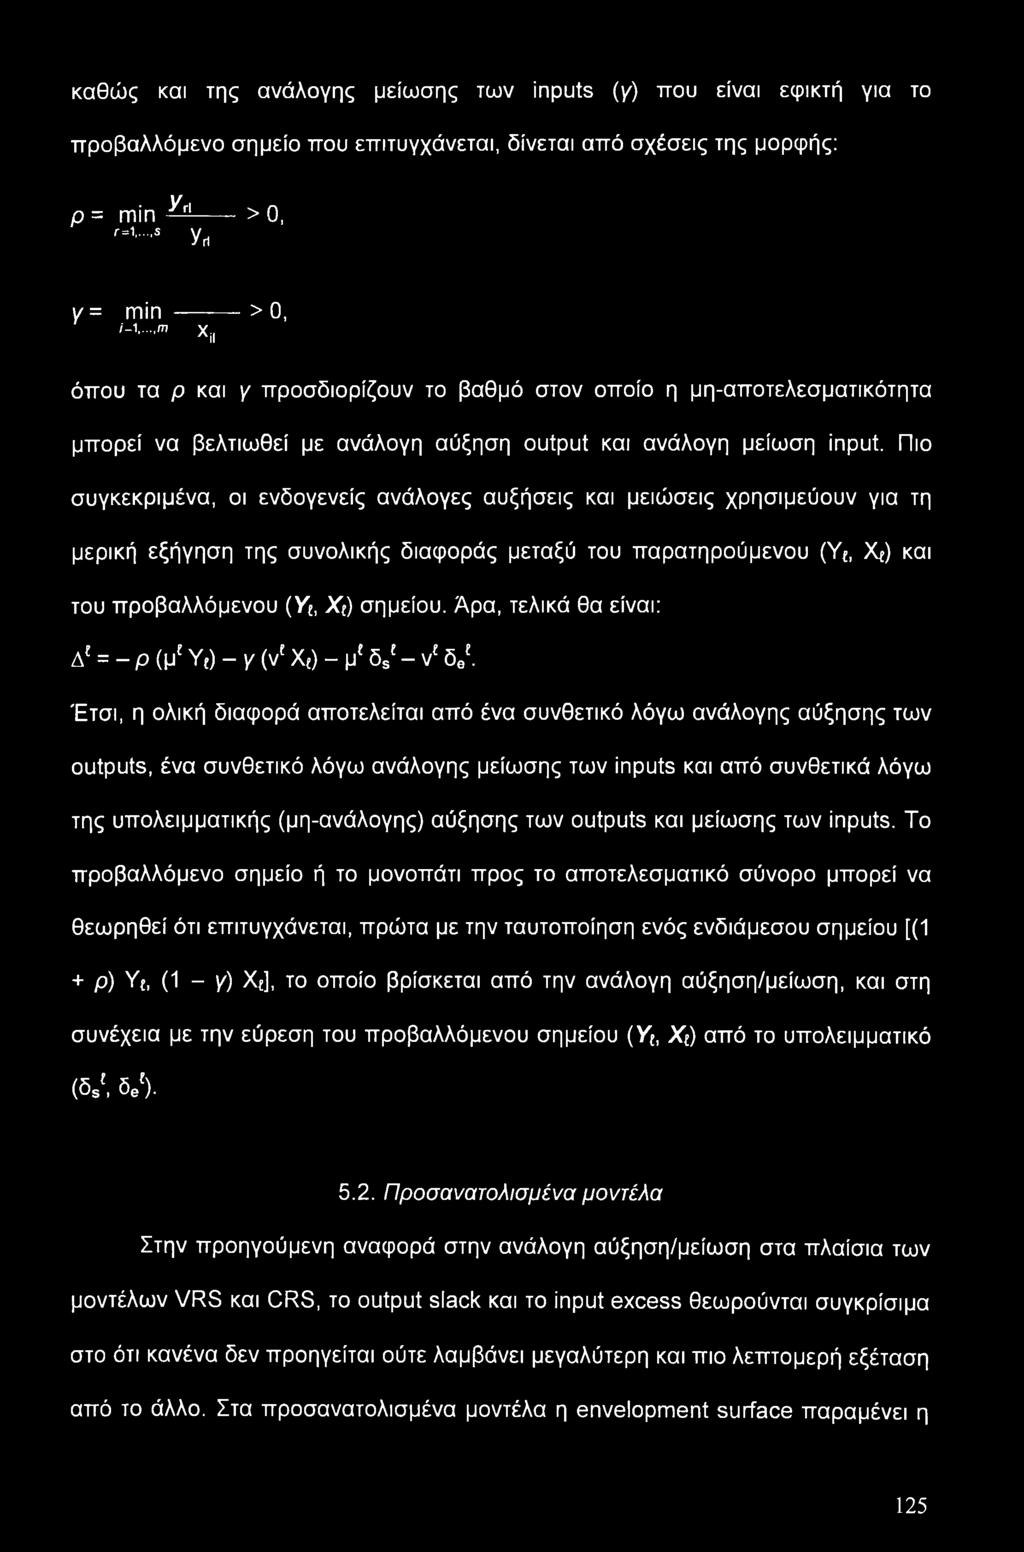 Πιο συγκεκριμένα, οι ενδογενείς ανάλογες αυξήσεις και μειώσεις χρησιμεύουν για τη μερική εξήγηση της συνολικής διαφοράς μεταξύ του παρατηρούμενου (Υ{, >Q) και του προβαλλόμενου (Υ{, Xt) σημείου.